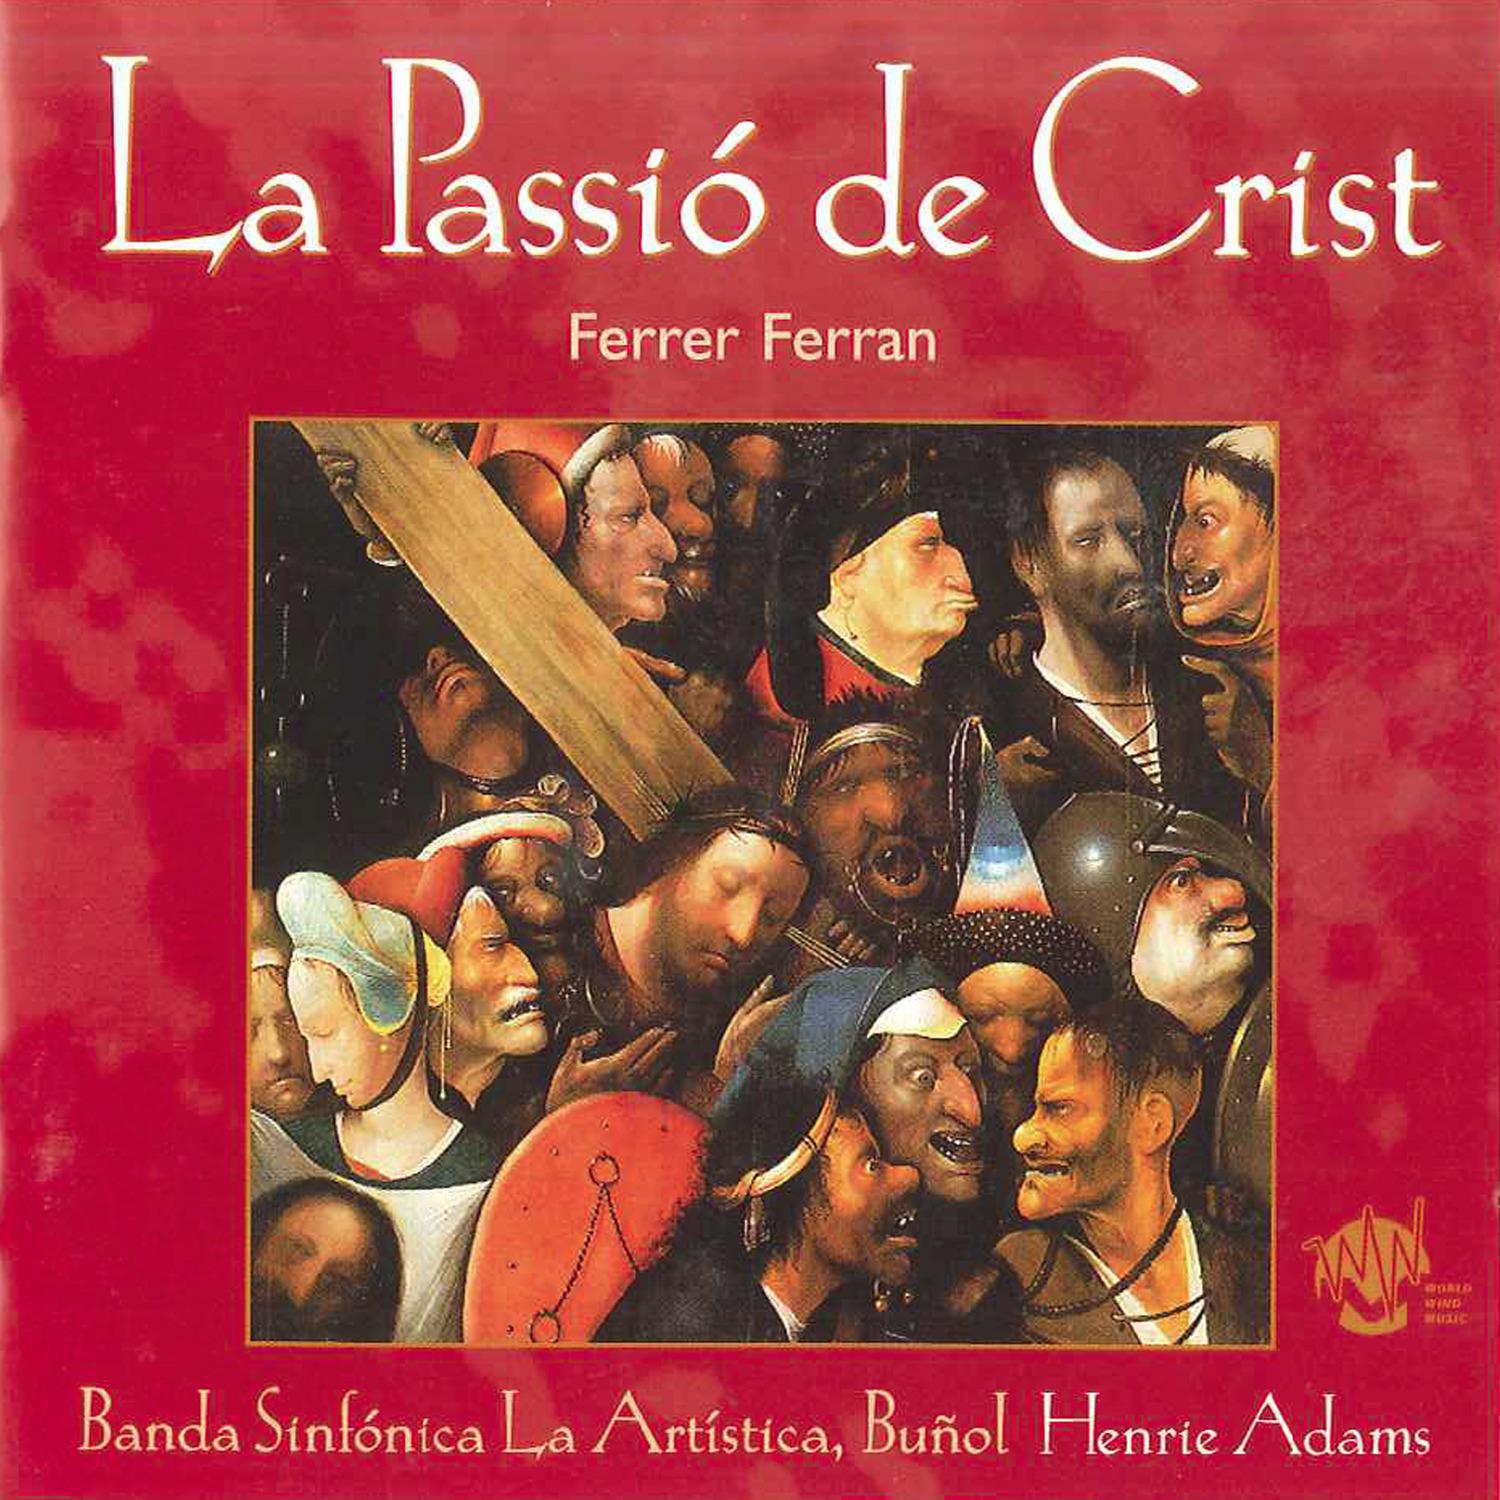 La Passio de Crist: II. The three Temptations